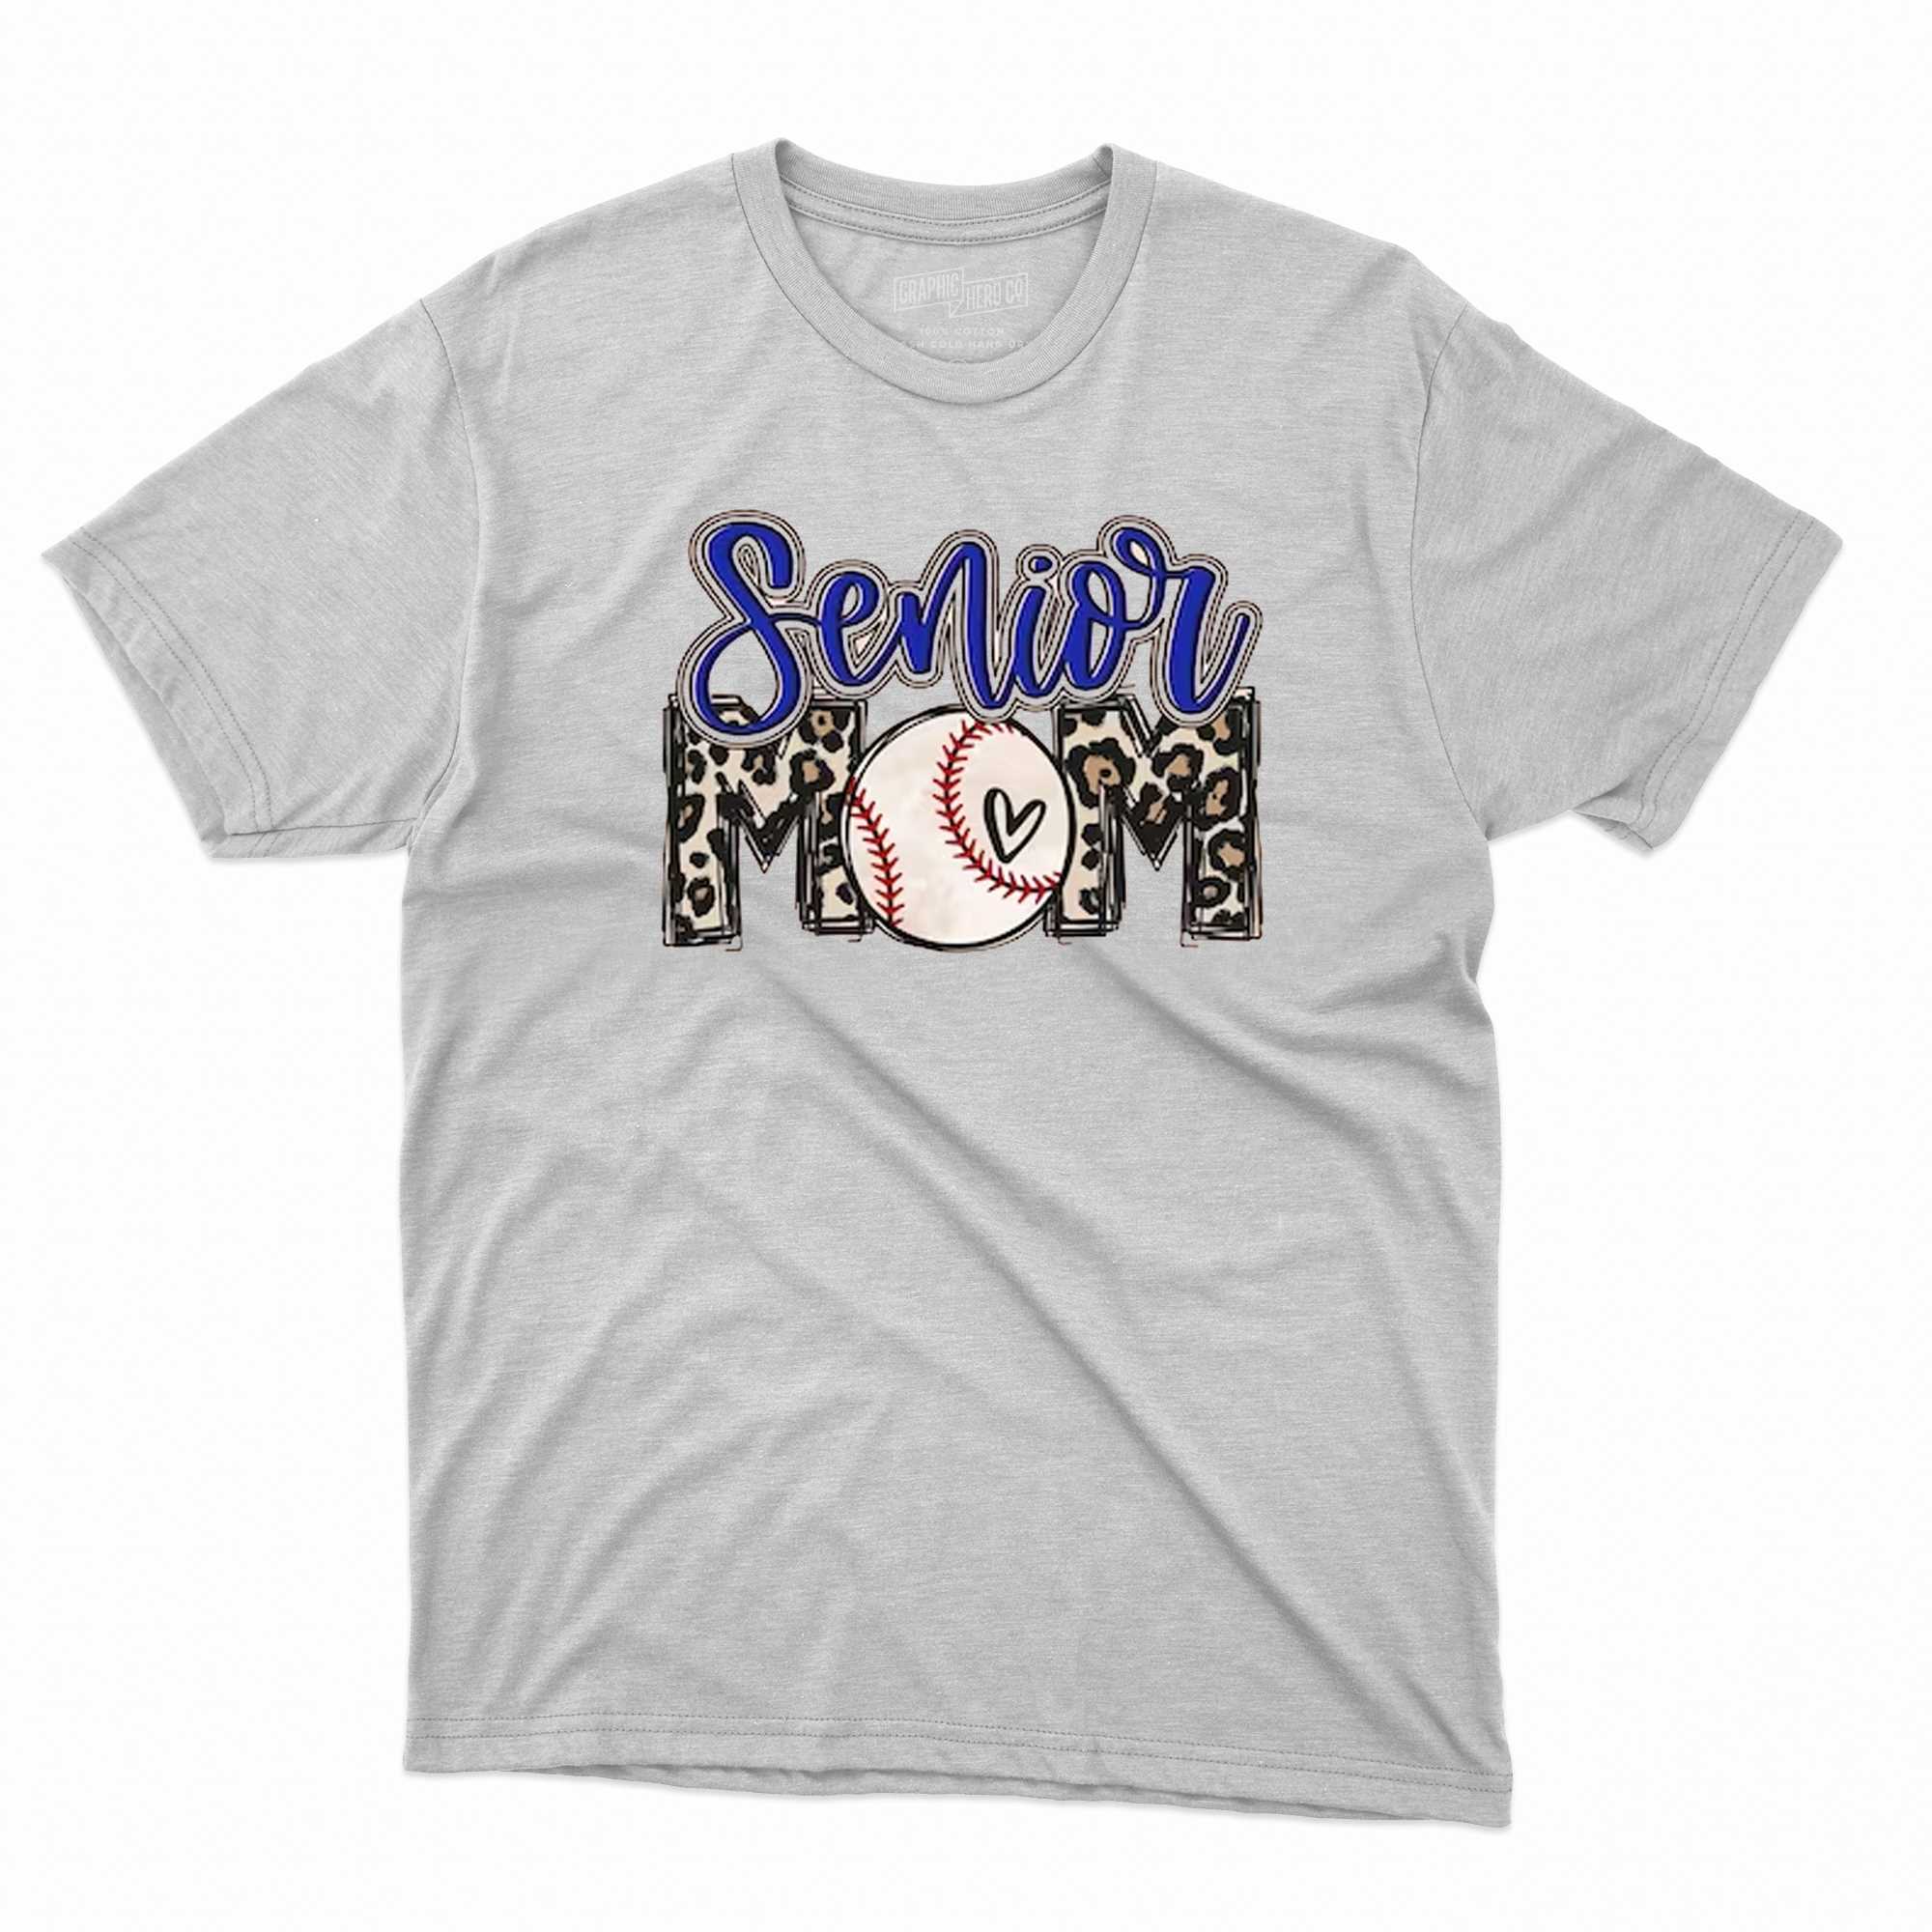 senior baseball mom senior sports shirt 1 1